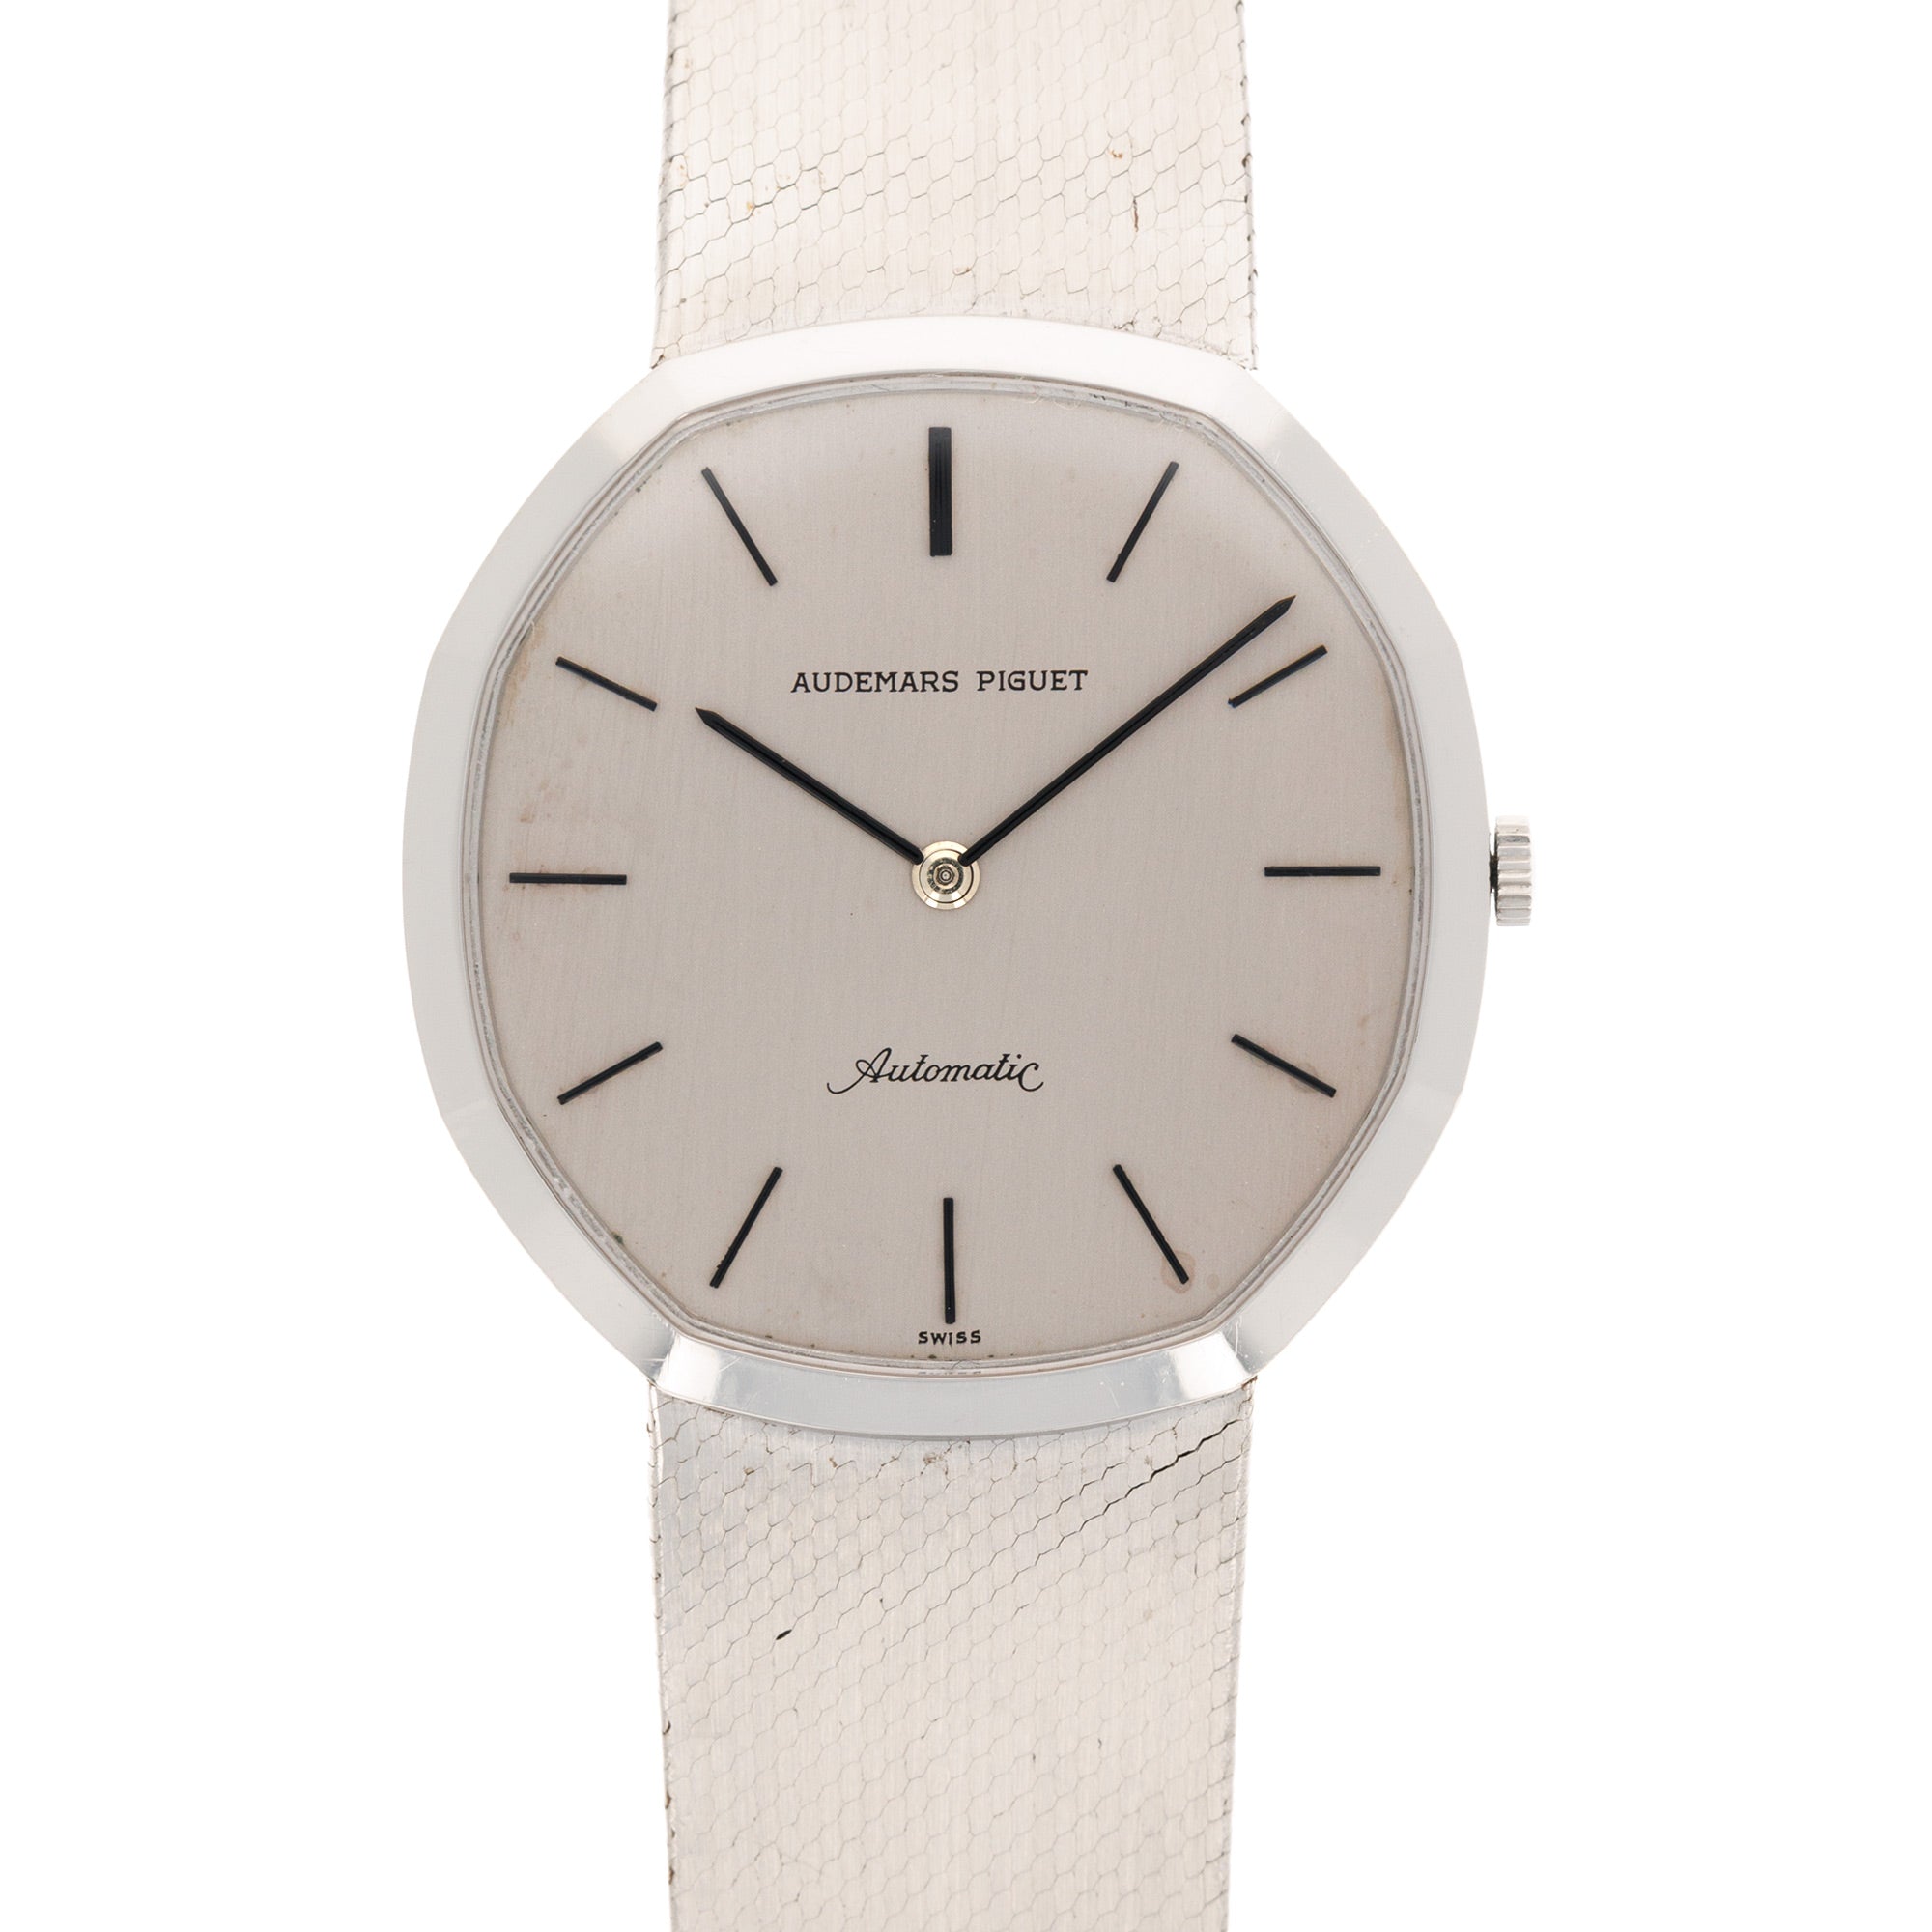 Audemars Piguet - Audemars Piguet Steel Automatic Watch - The Keystone Watches